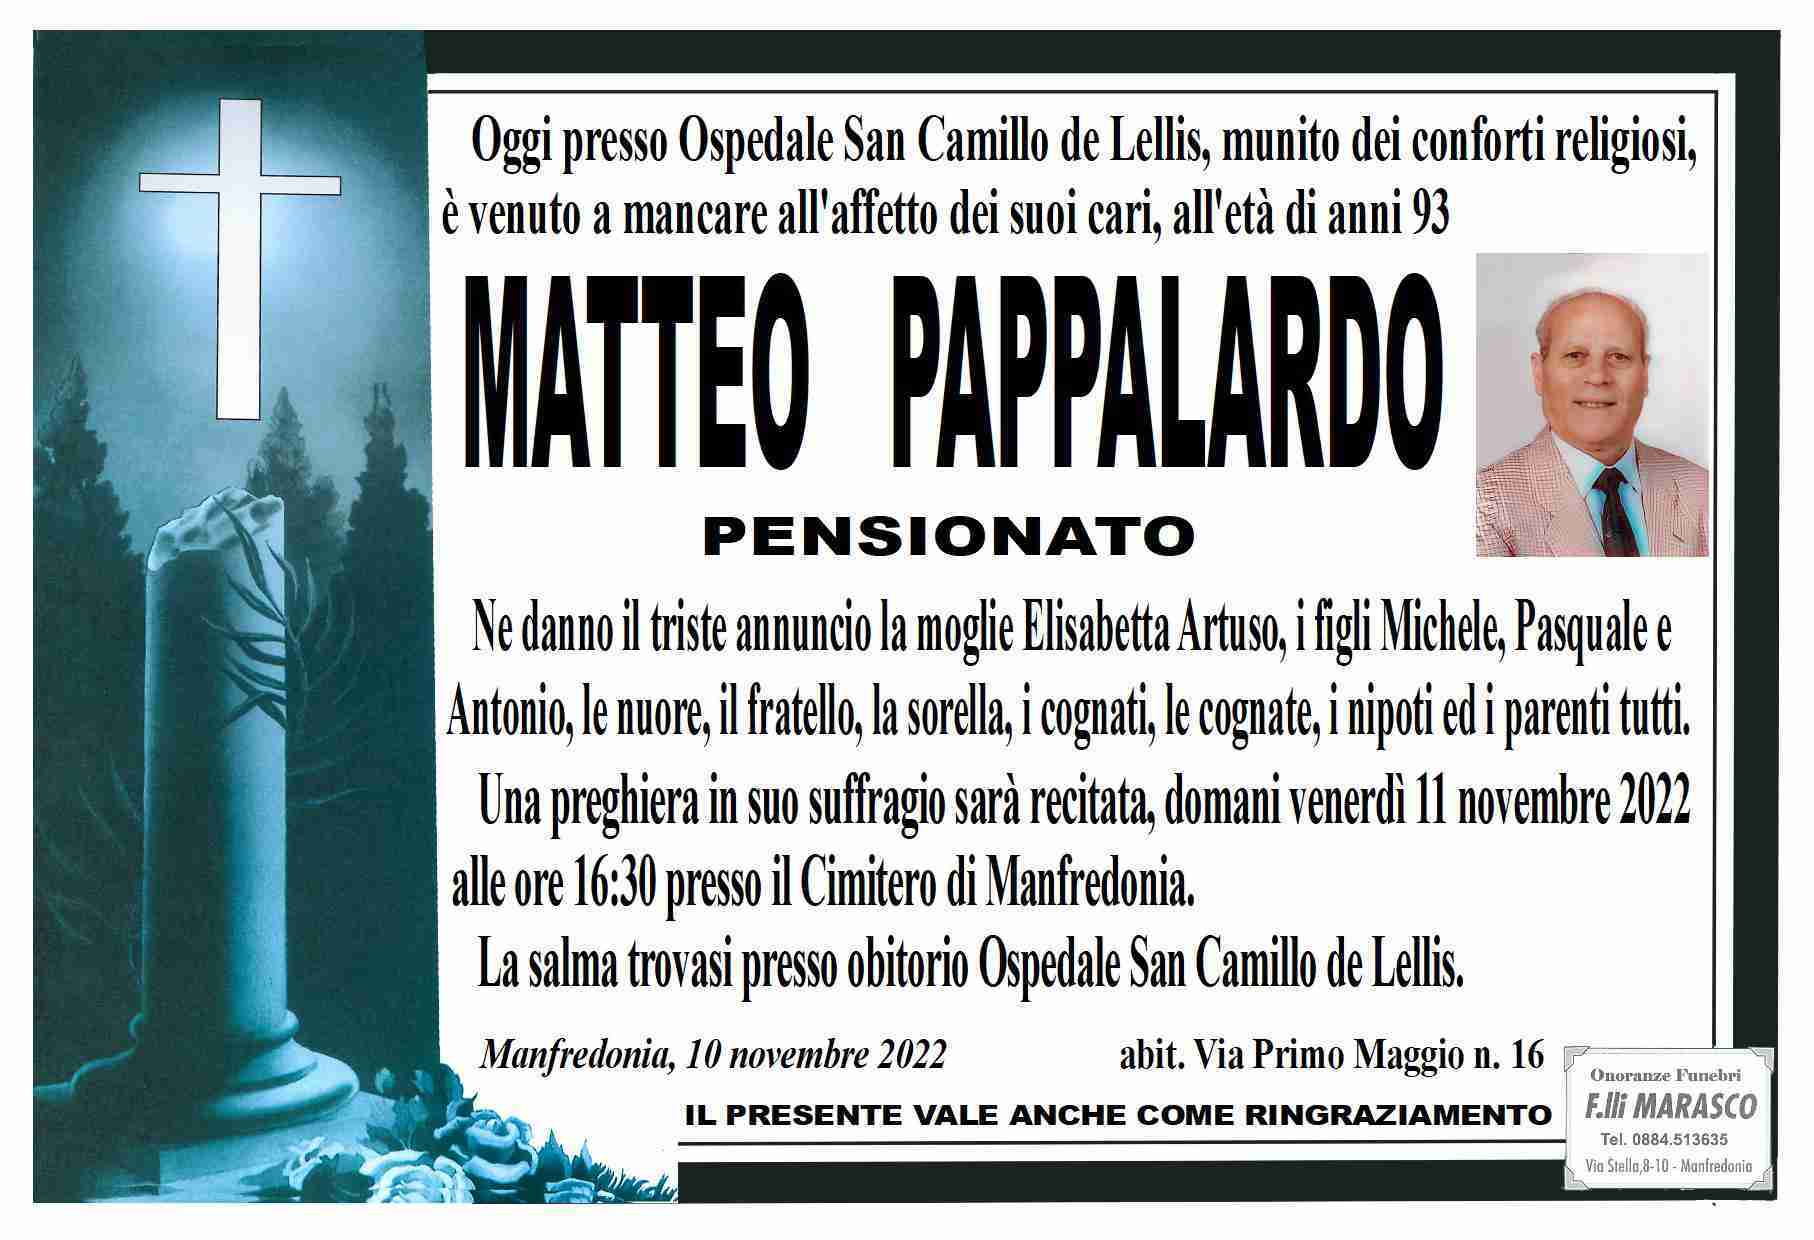 Matteo Pappalardo